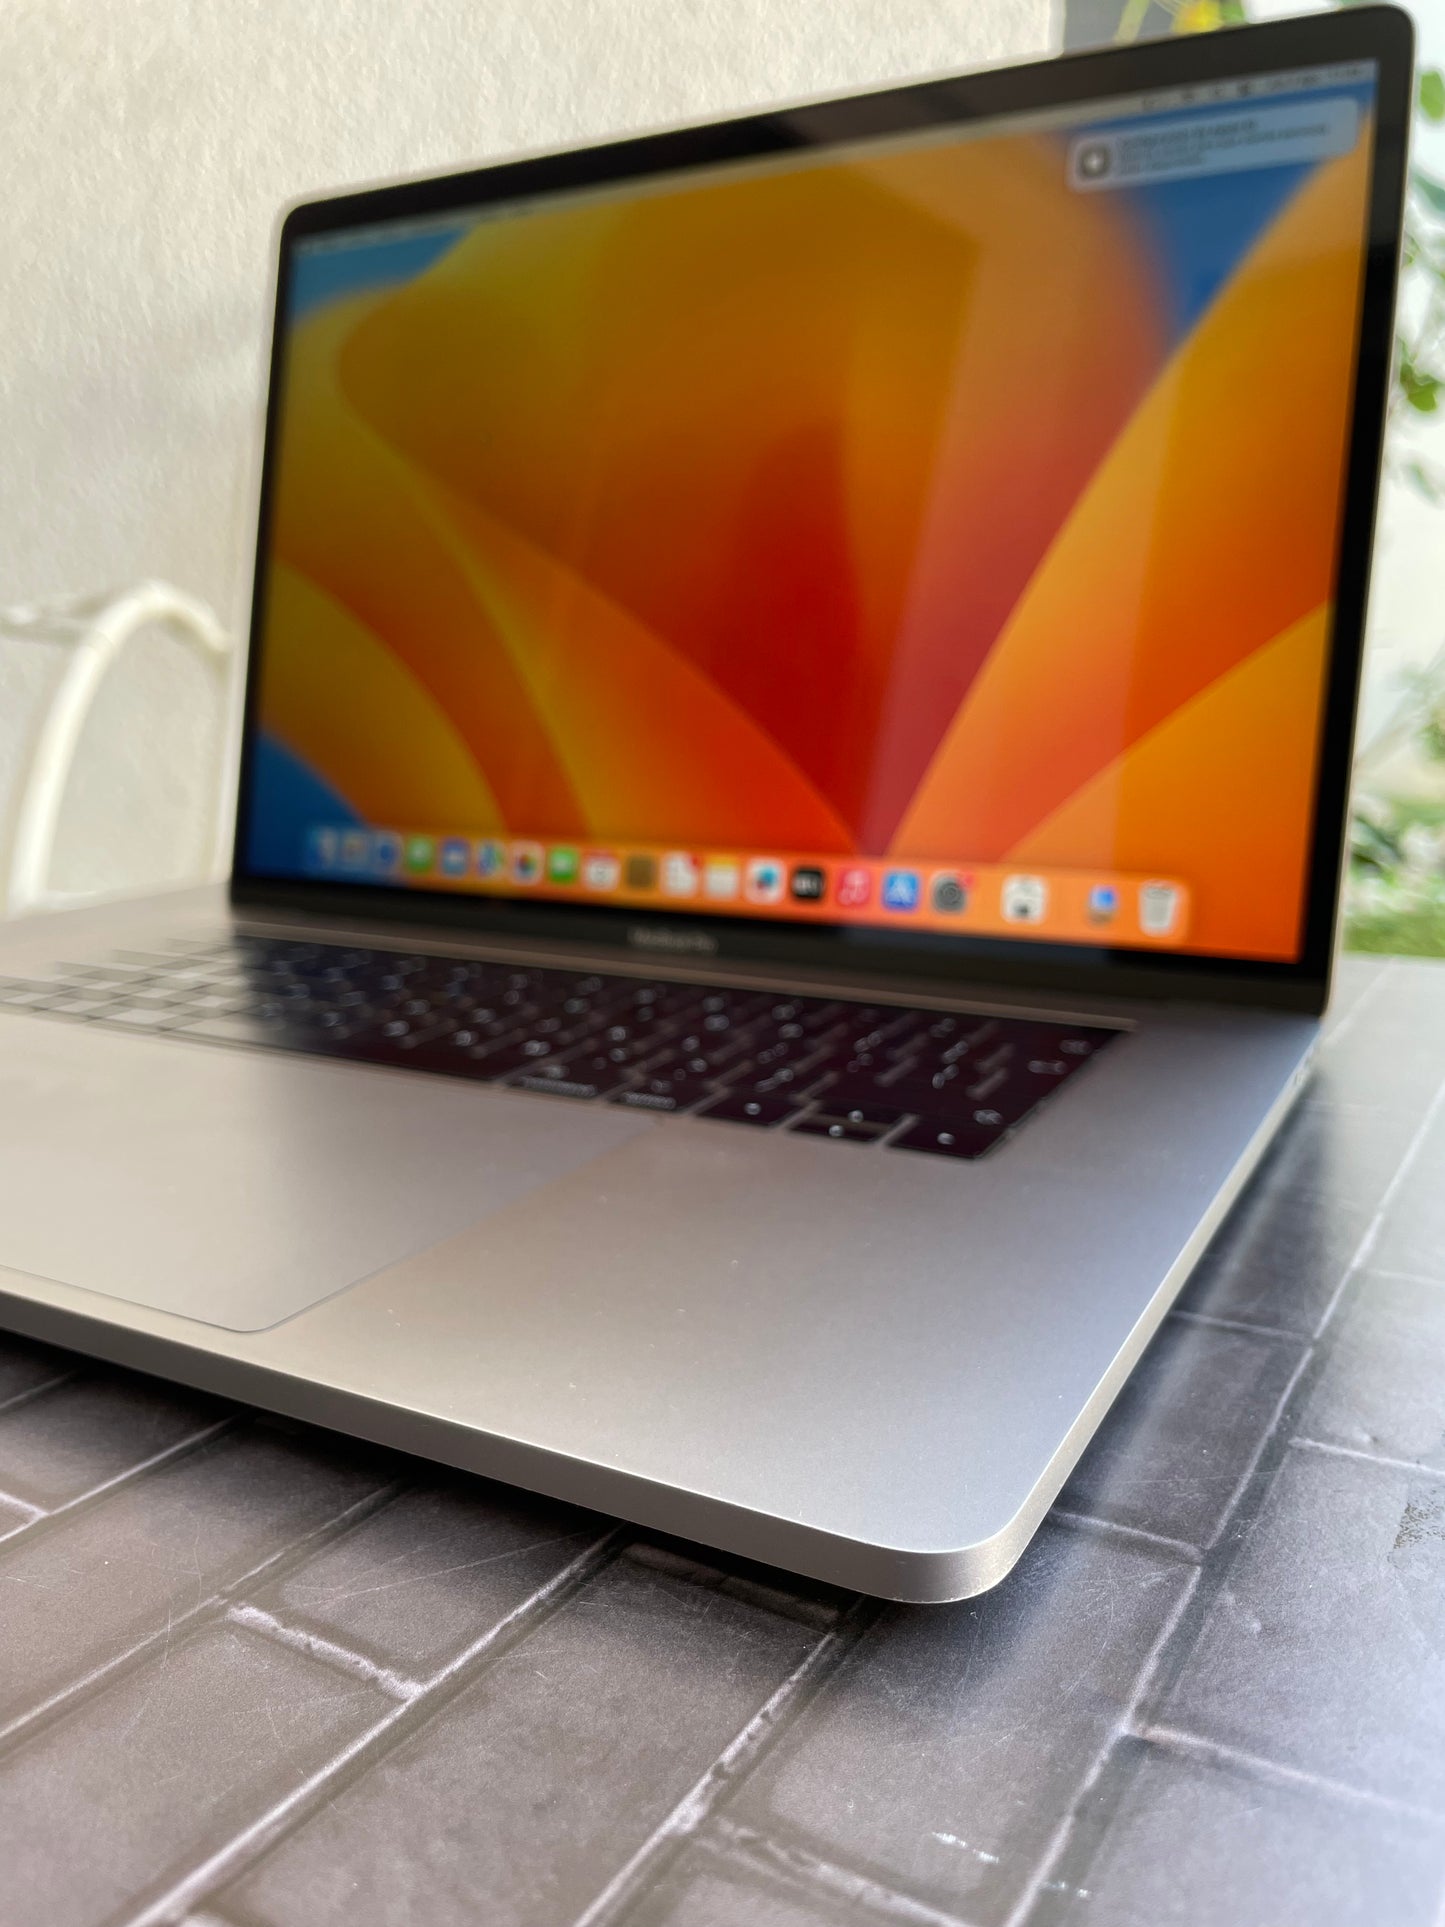 Macbook Pro 2017 de 15" con TouchBar - Rápida, ideal para diseño